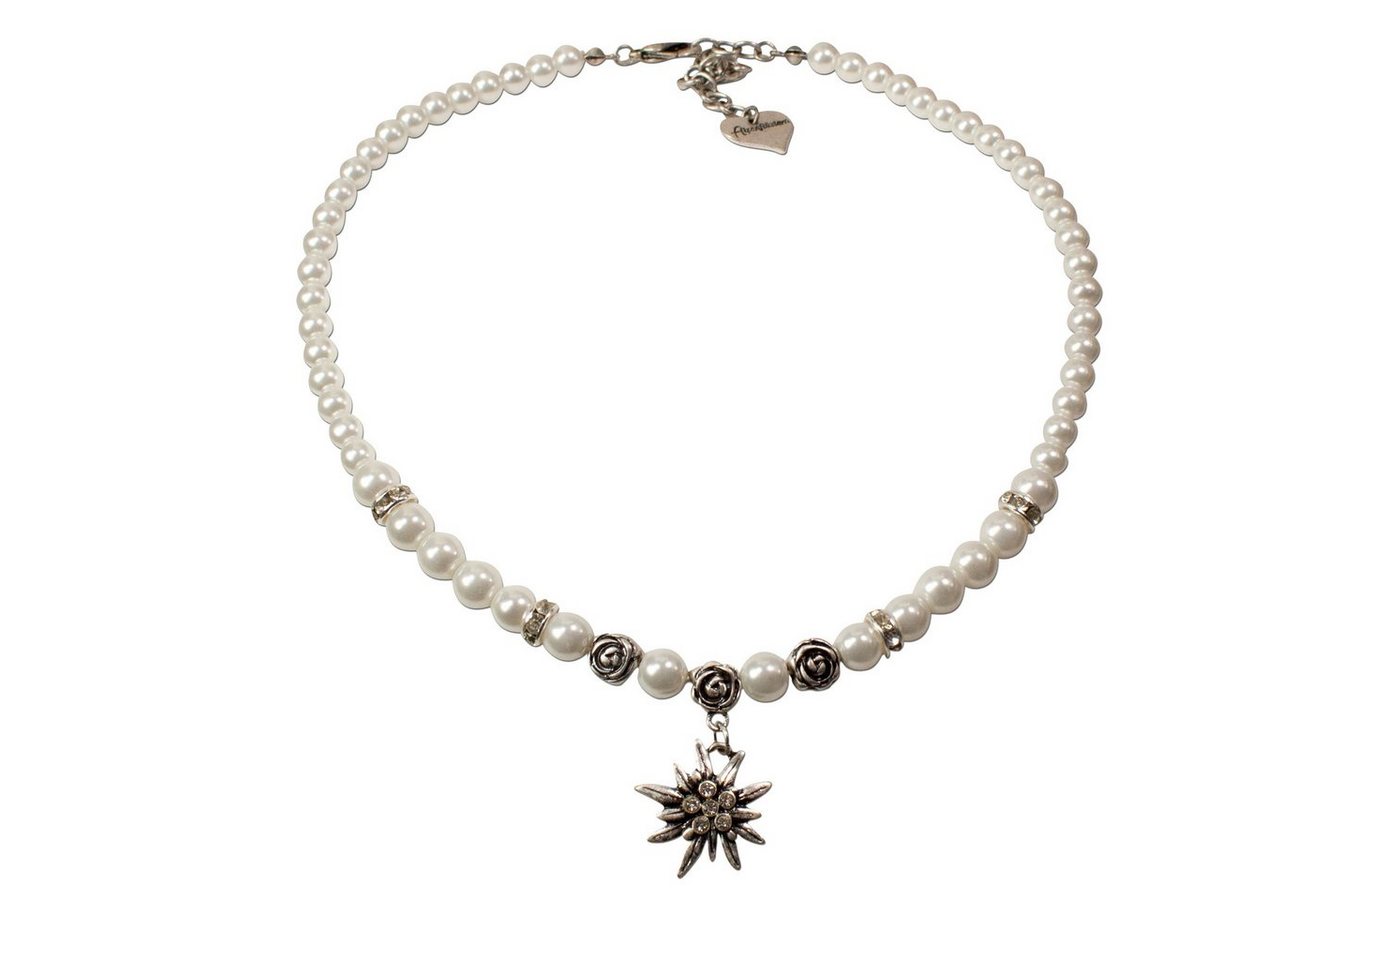 Alpenflüstern Collier Perlen-Trachtenkette Fiona mit Strass-Edelweiß klein (creme-weiß), - Damen-Trachtenschmuck Dirndlkette von Alpenflüstern